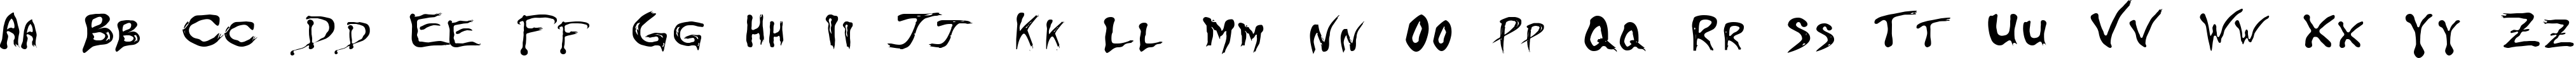 Пример написания английского алфавита шрифтом Floydian